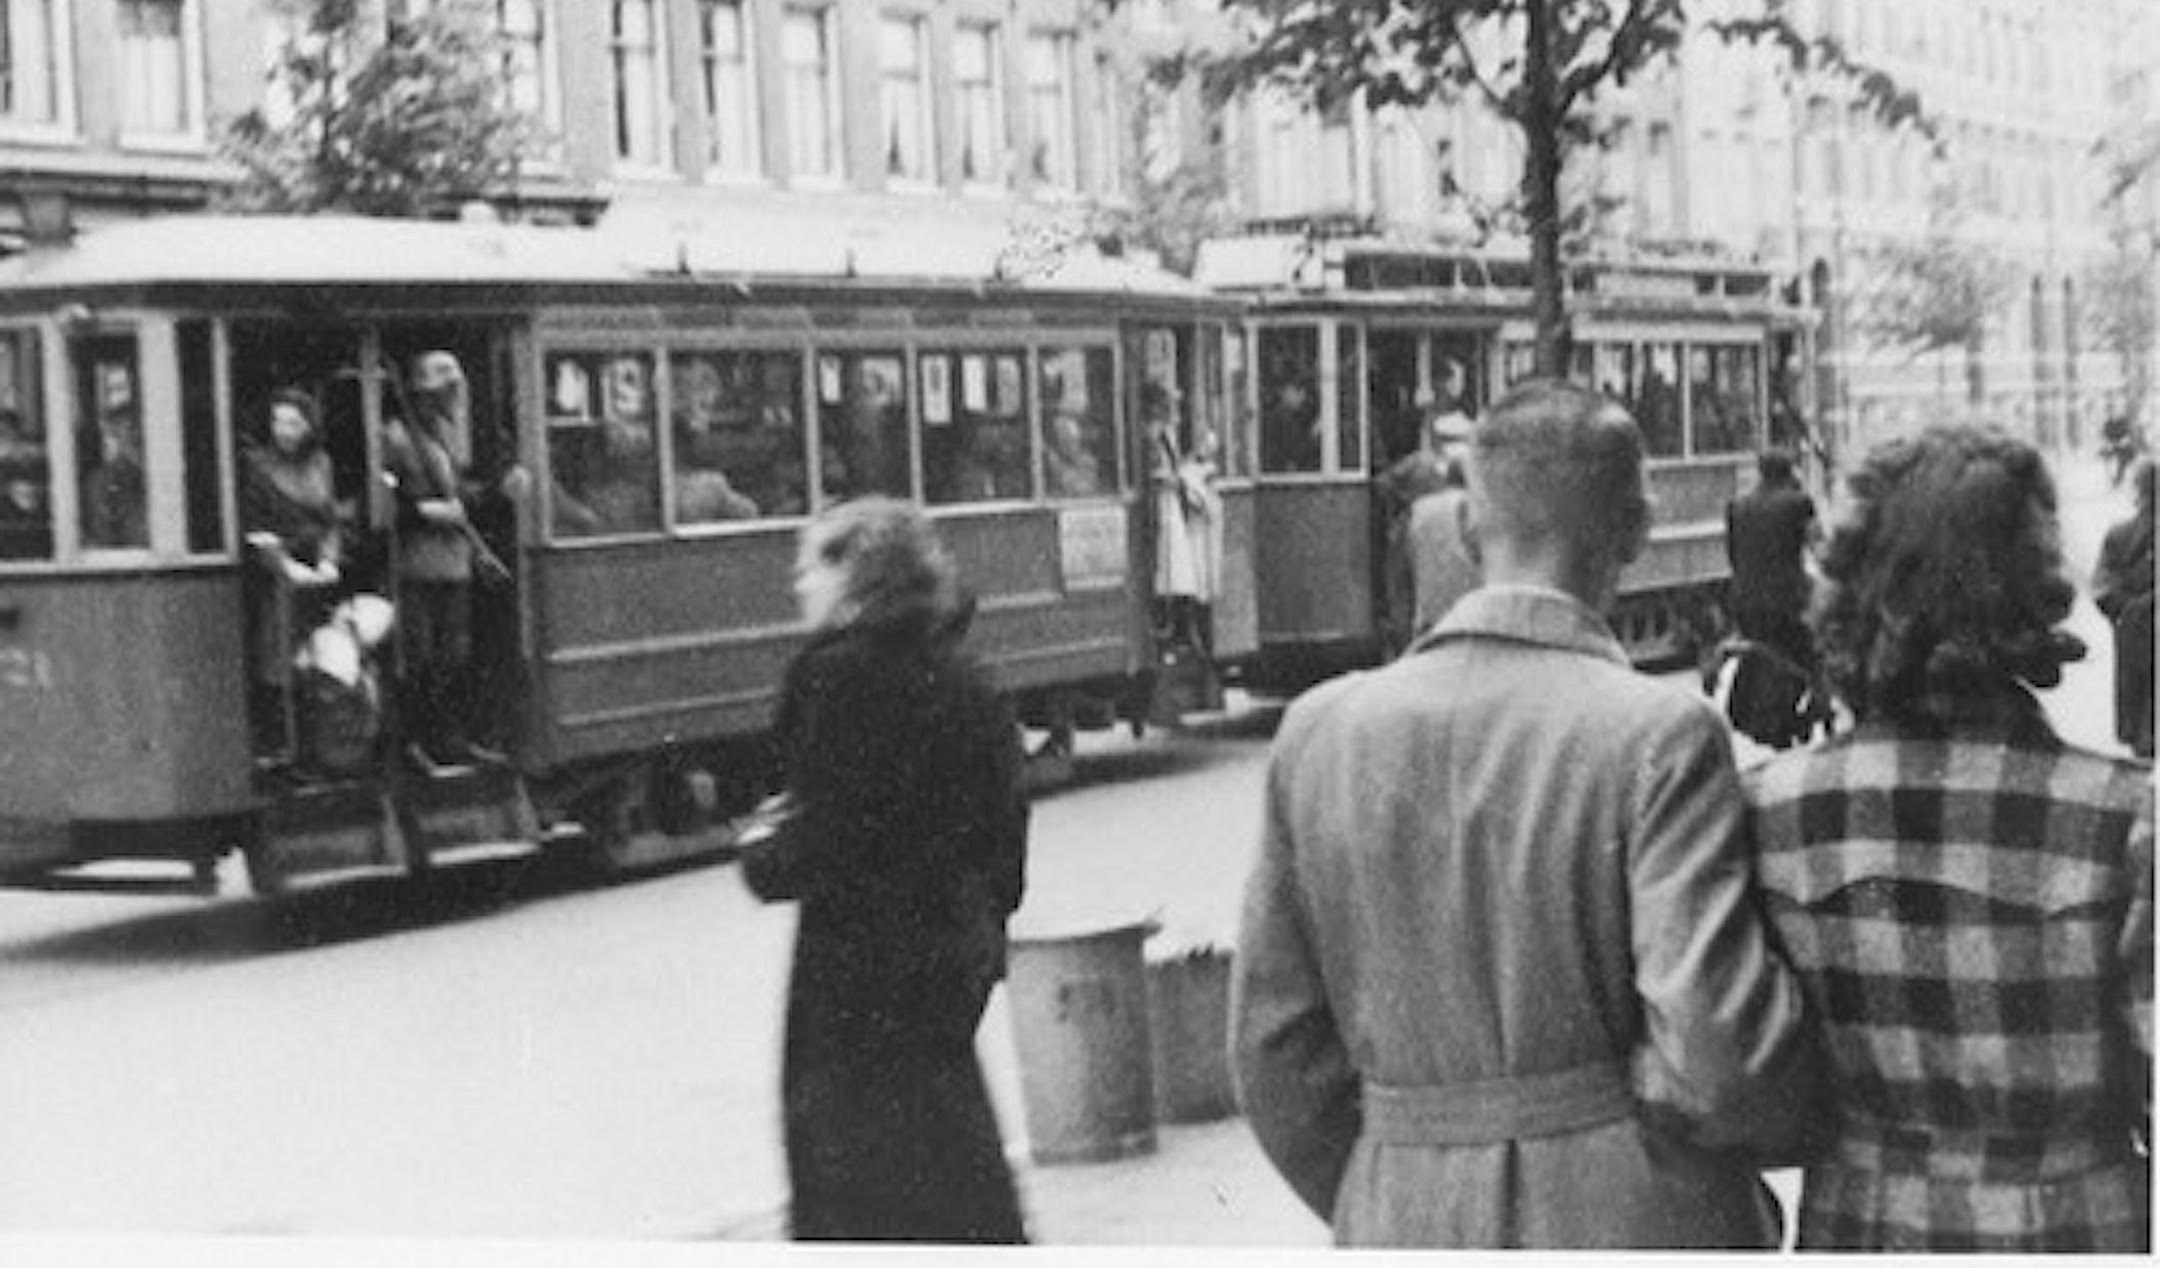 Het Nederlandse trambedrijf dat Anne Frank naar haar ondergang bracht, zocht na de oorlog herstelbetalingen, zo blijkt uit nieuw onderzoek